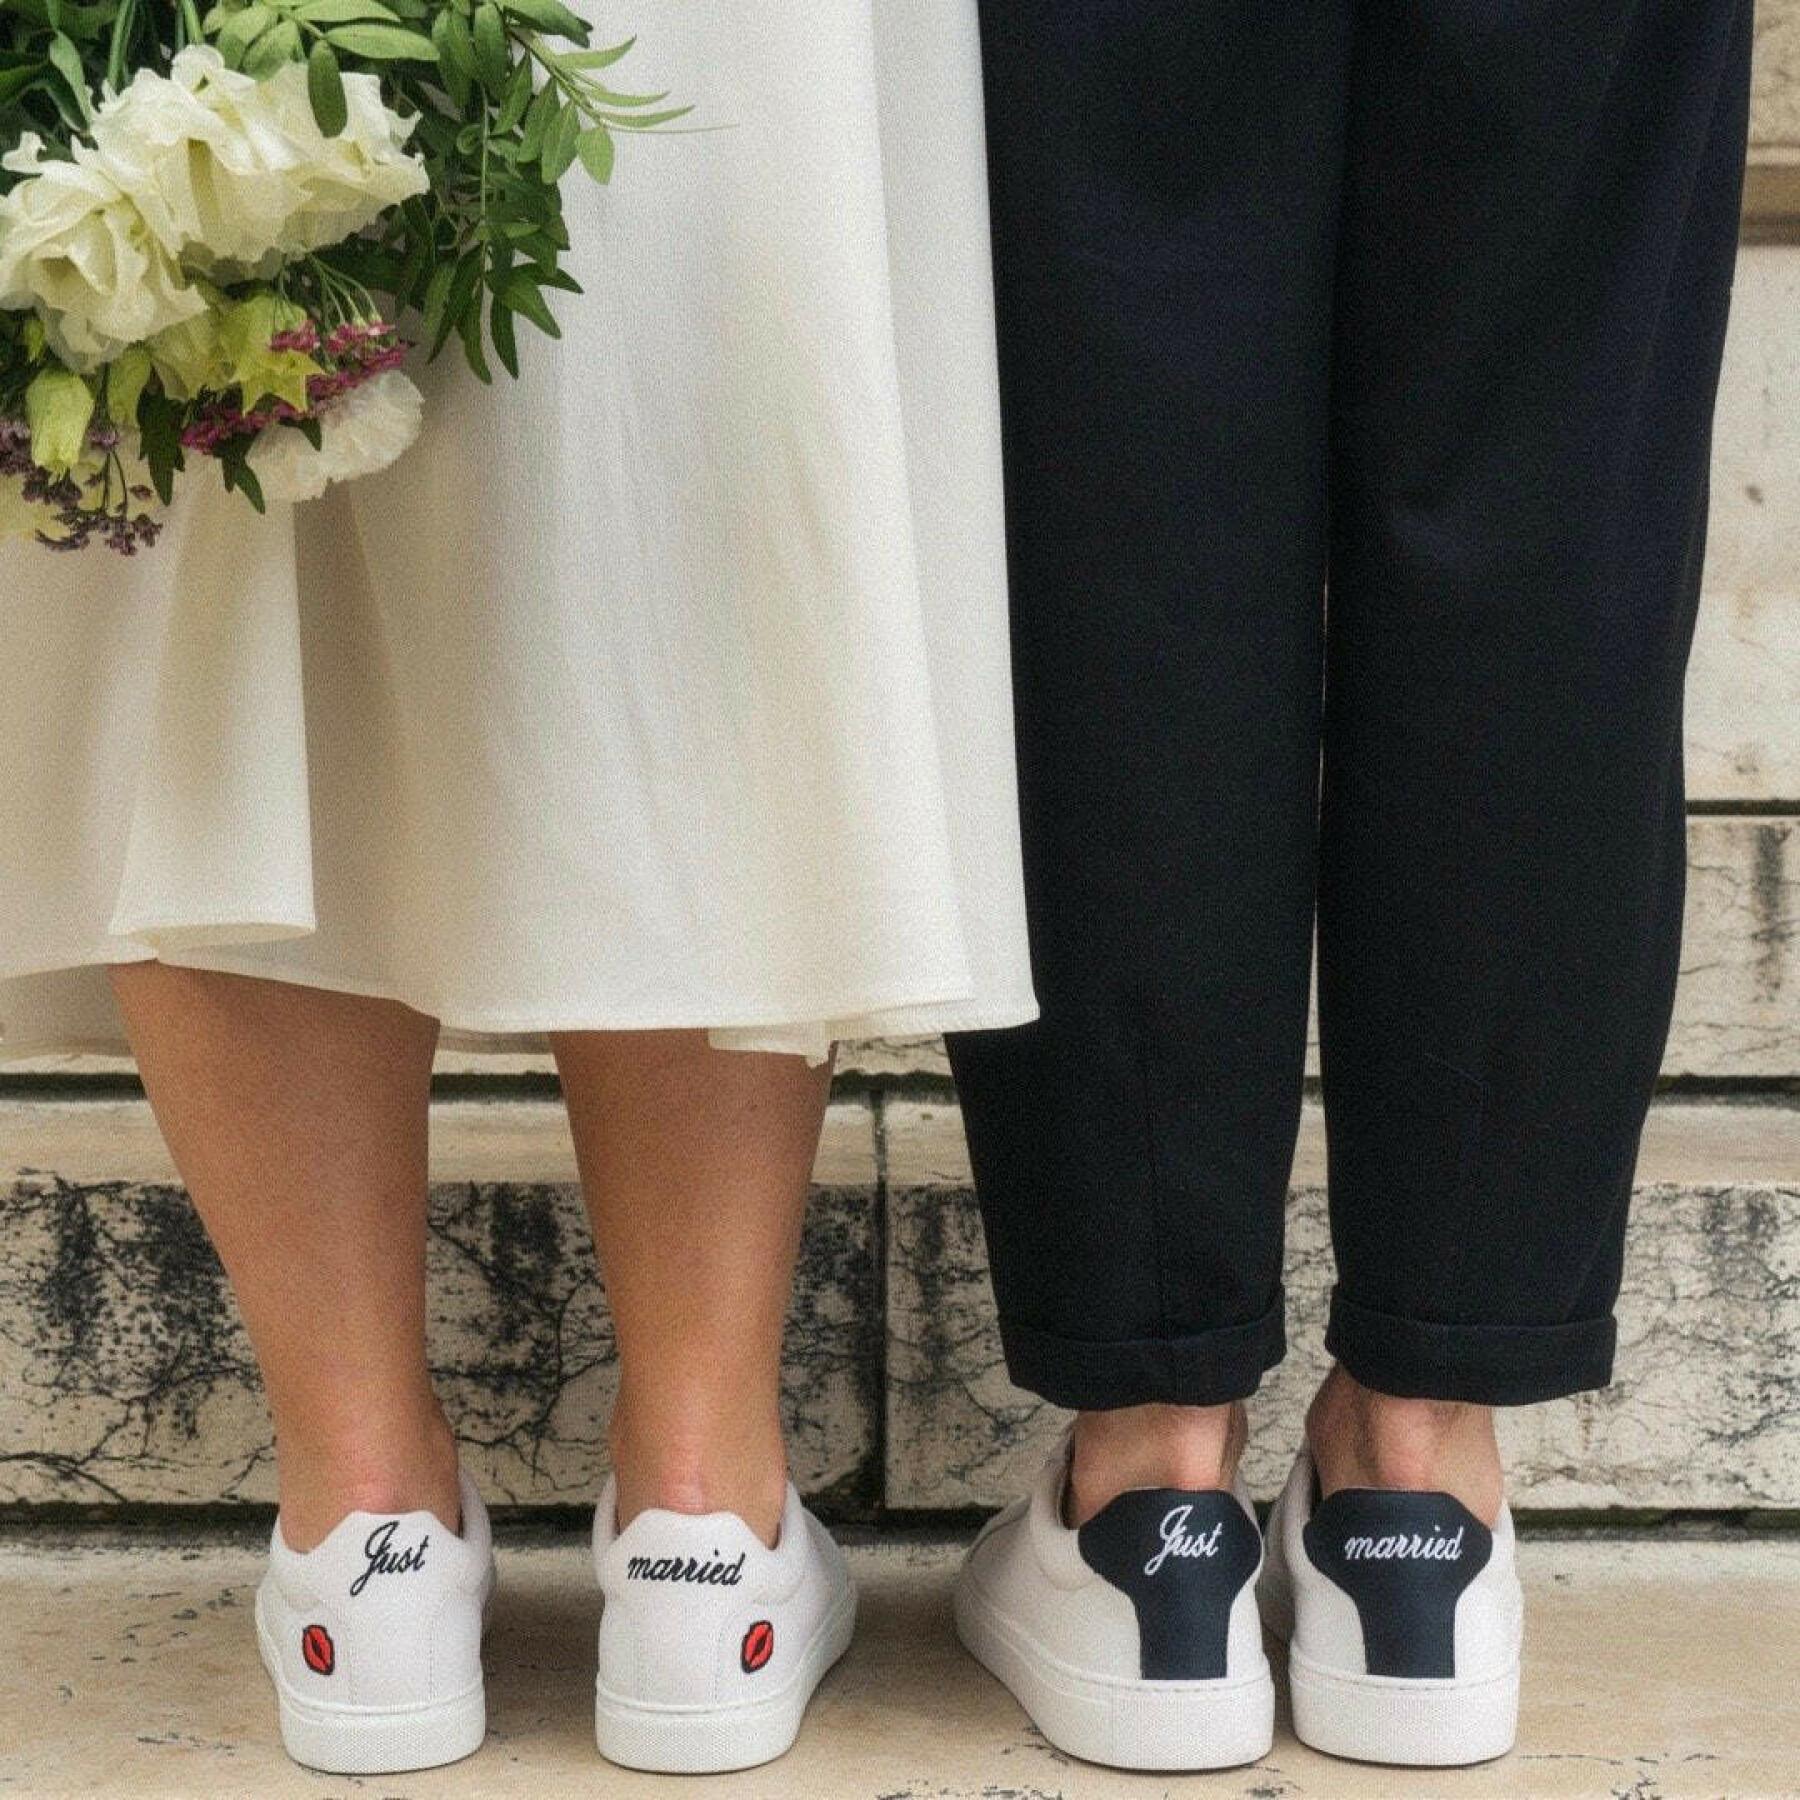 Bergantín Almacén Santuario Zapatillas de deporte para mujeres Bons baisers de Paname Simone-Just  Married - Sneakers - Zapatos